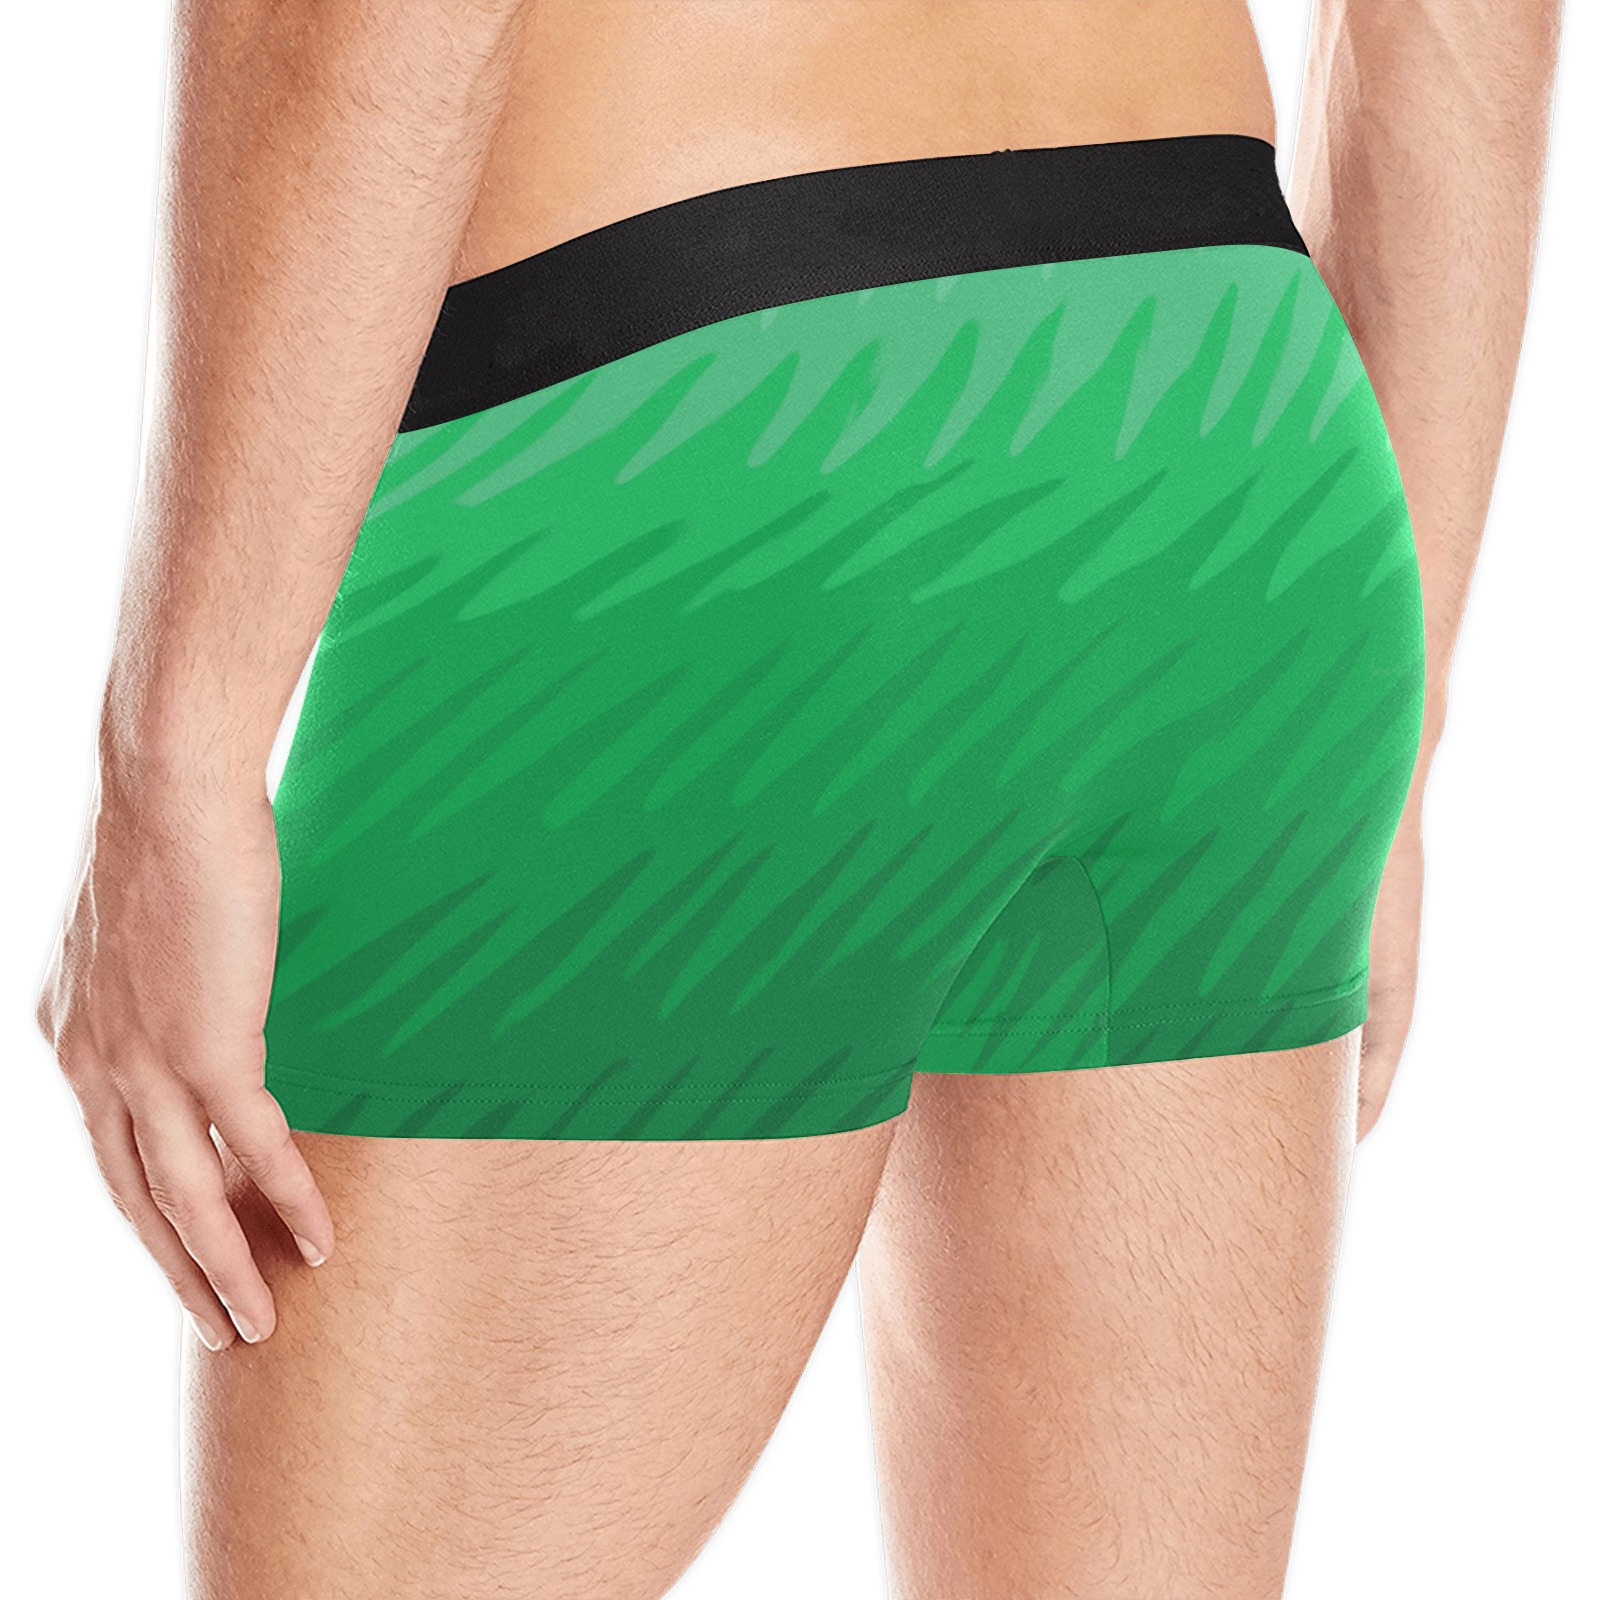 green wavespike Men's Boxer Briefs w/ Custom Waistband (Merged Design) (Model L10)